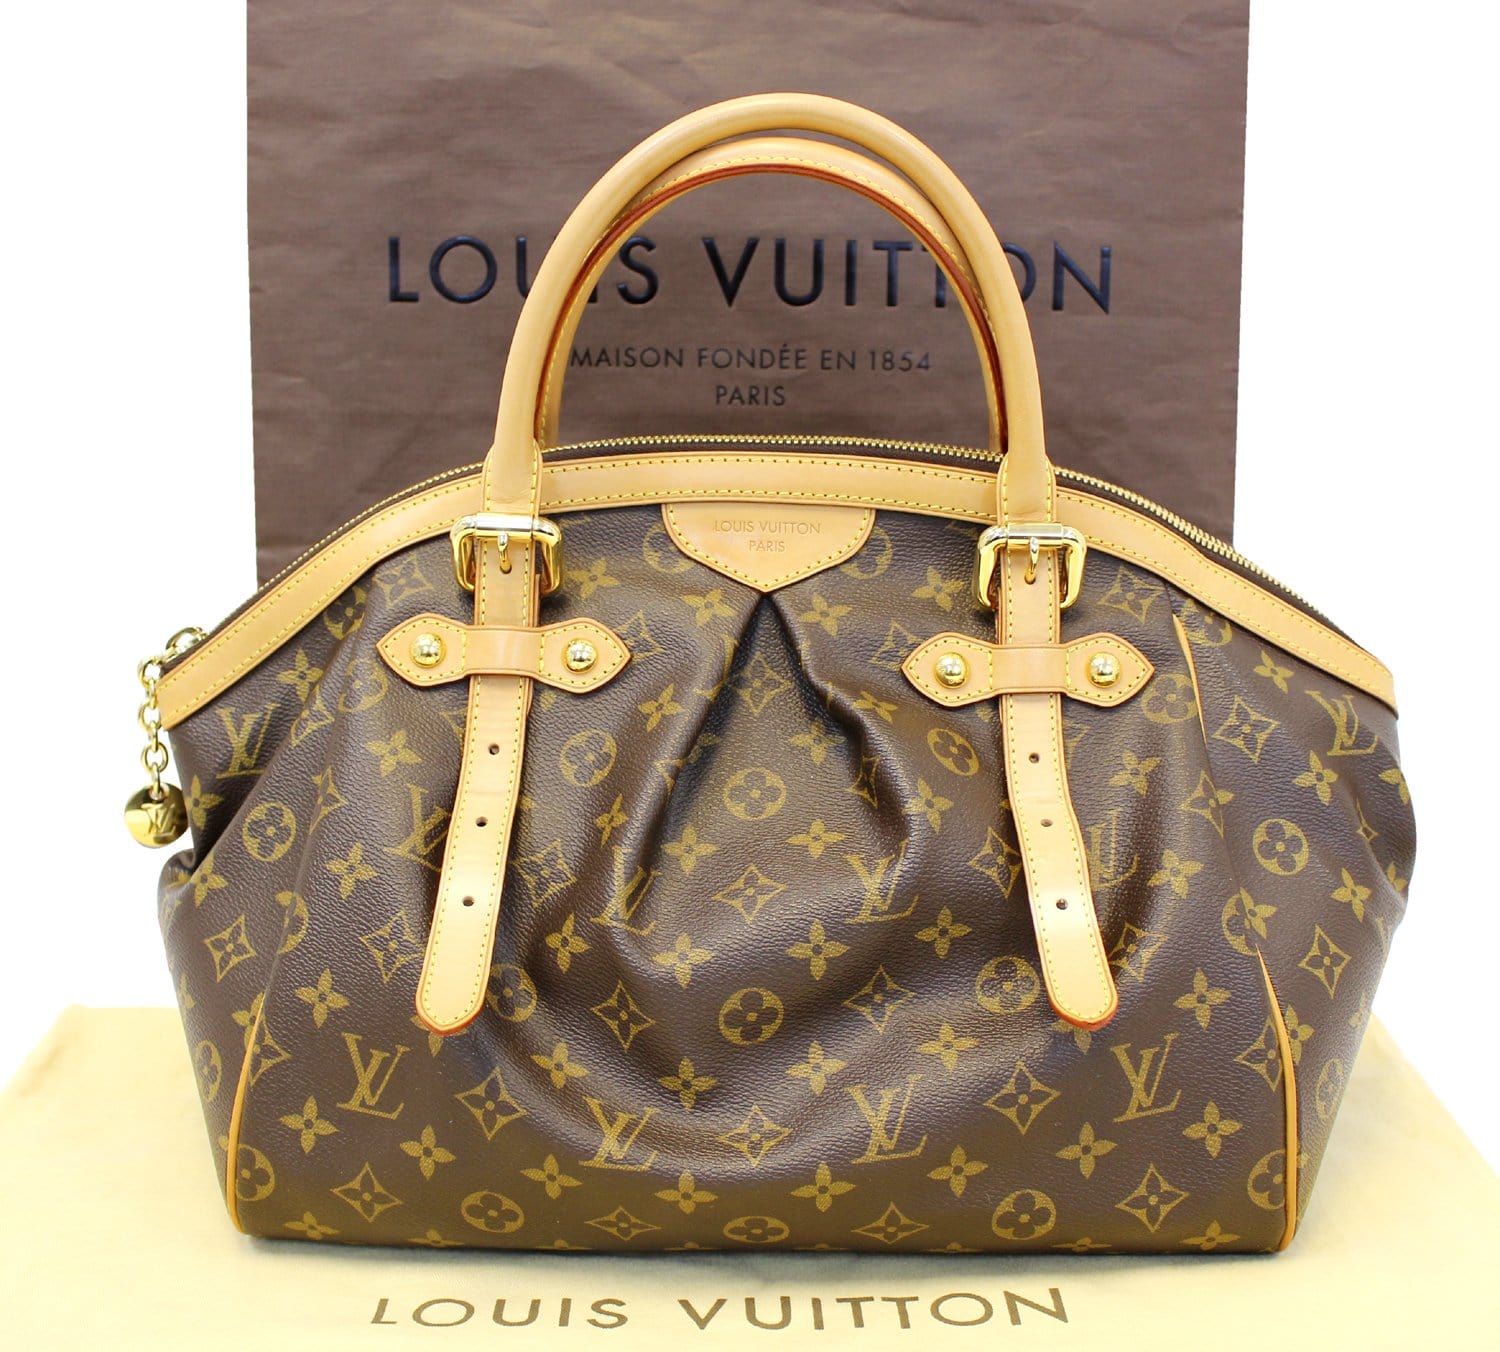 Louis Vuitton Tivoli GM Monogram Handbag Purse